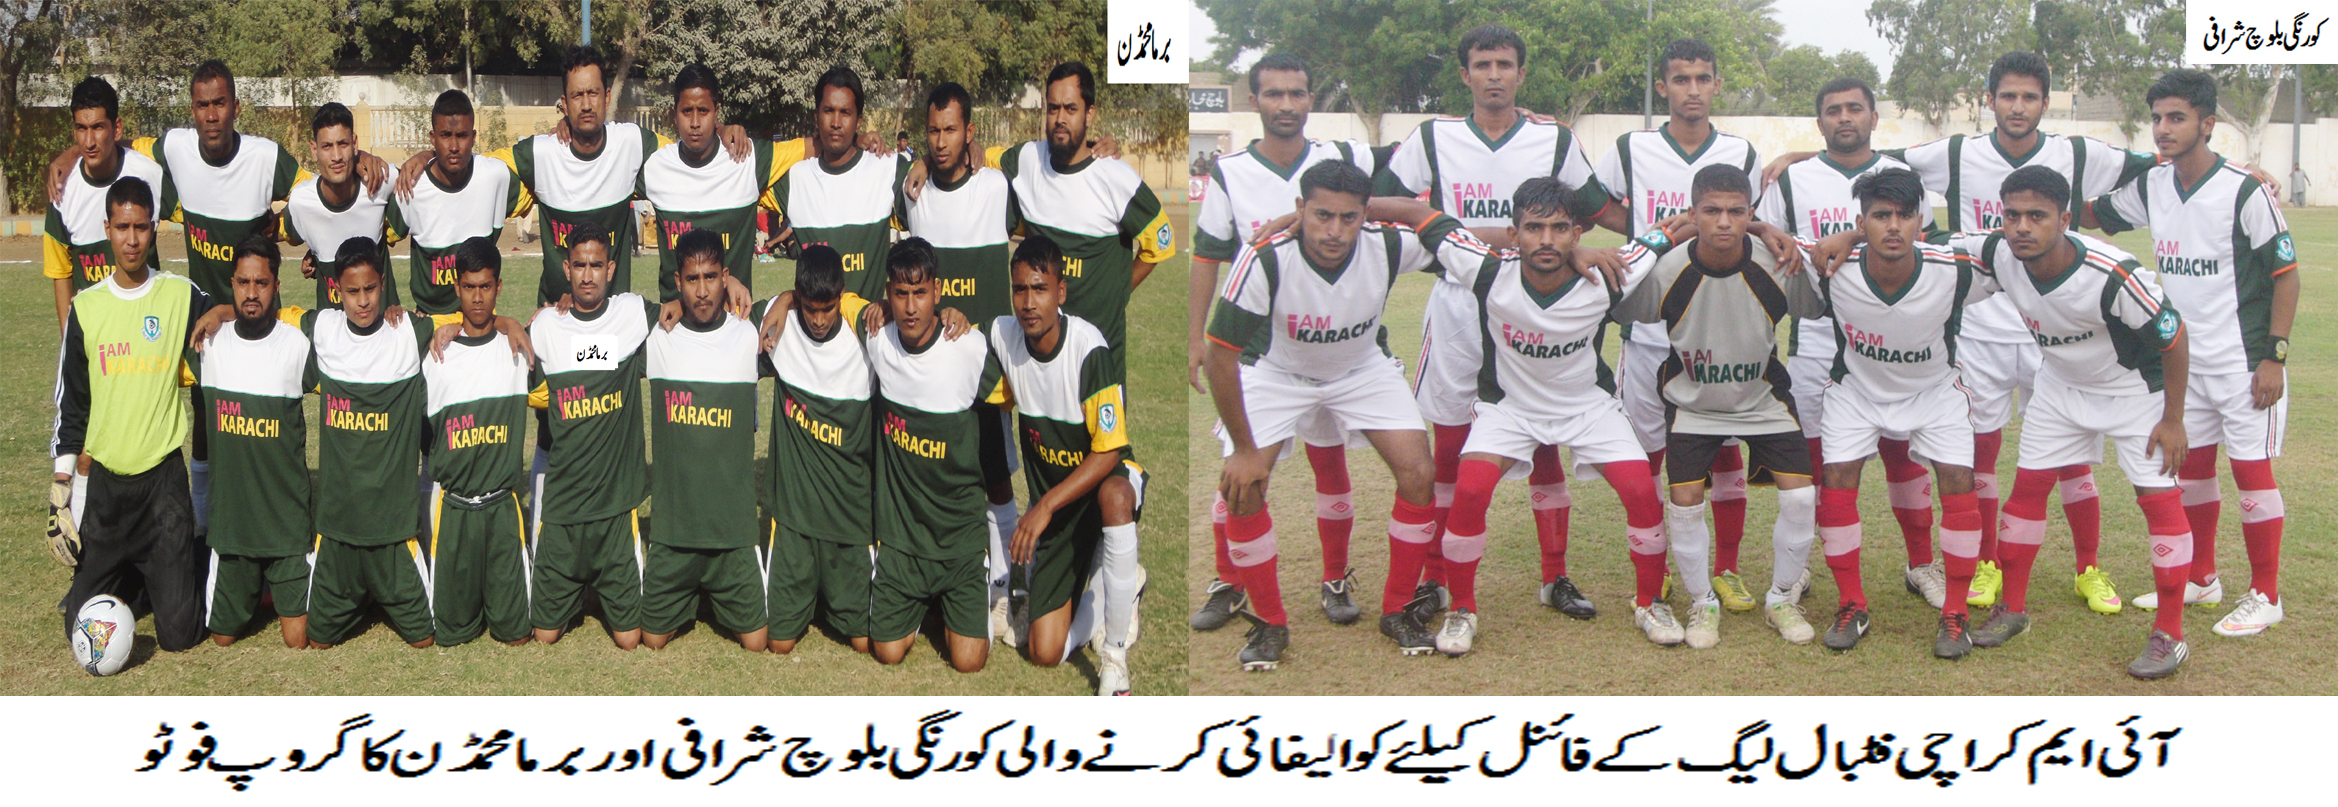 Burma & Korangi Baloch will clash in I am Karachi League – Final